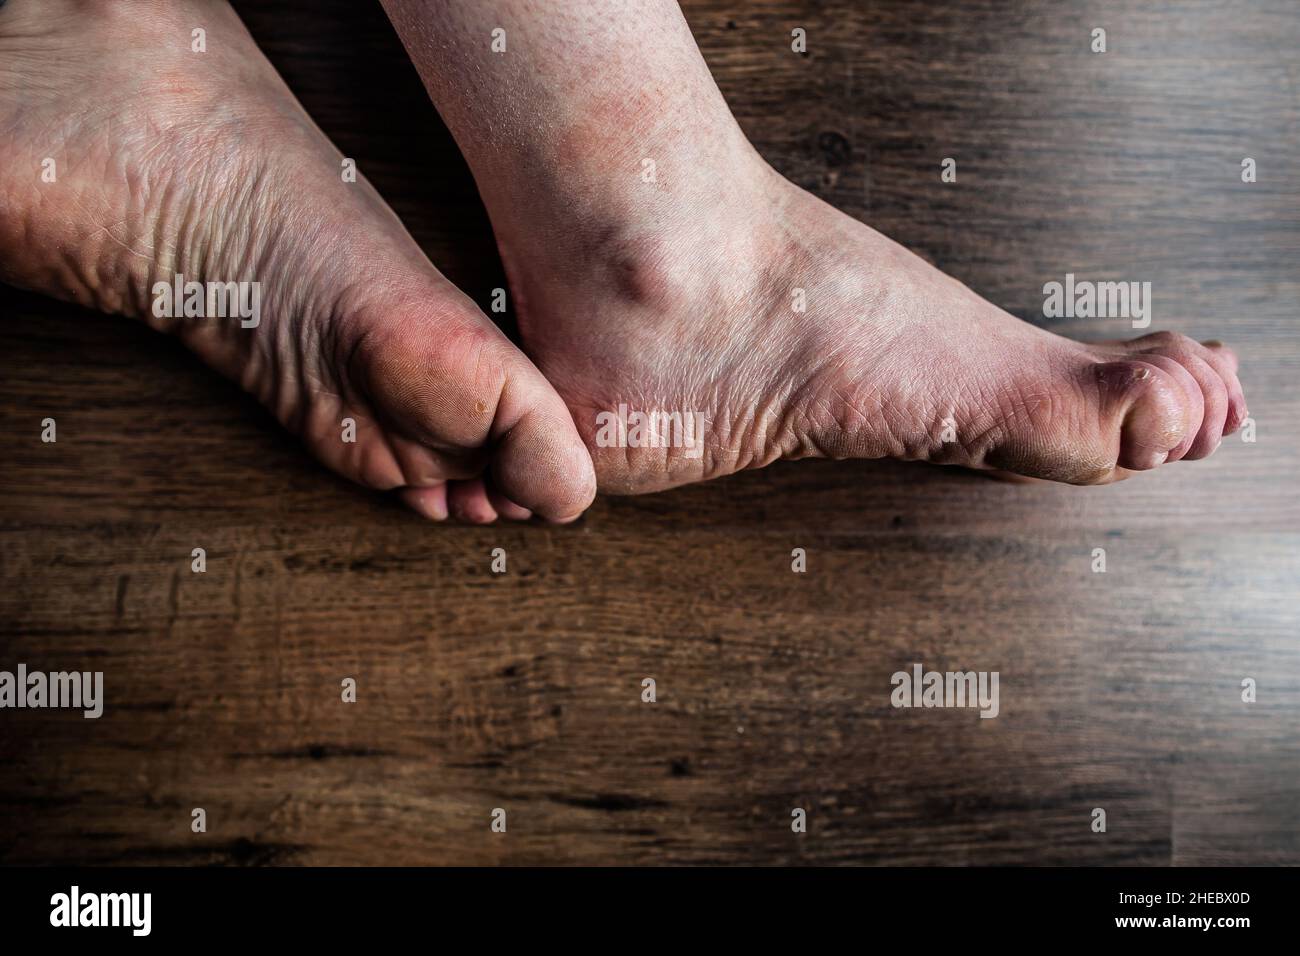 Füße einer Person mit Raynaud- und Ehlers-Danlos-Syndrom (EDS) mit geschwollenen Zehen, geschädigter, sehr trockener, gereizter Haut, Raynaud-Syndrom, Krankheitsschmerz Stockfoto